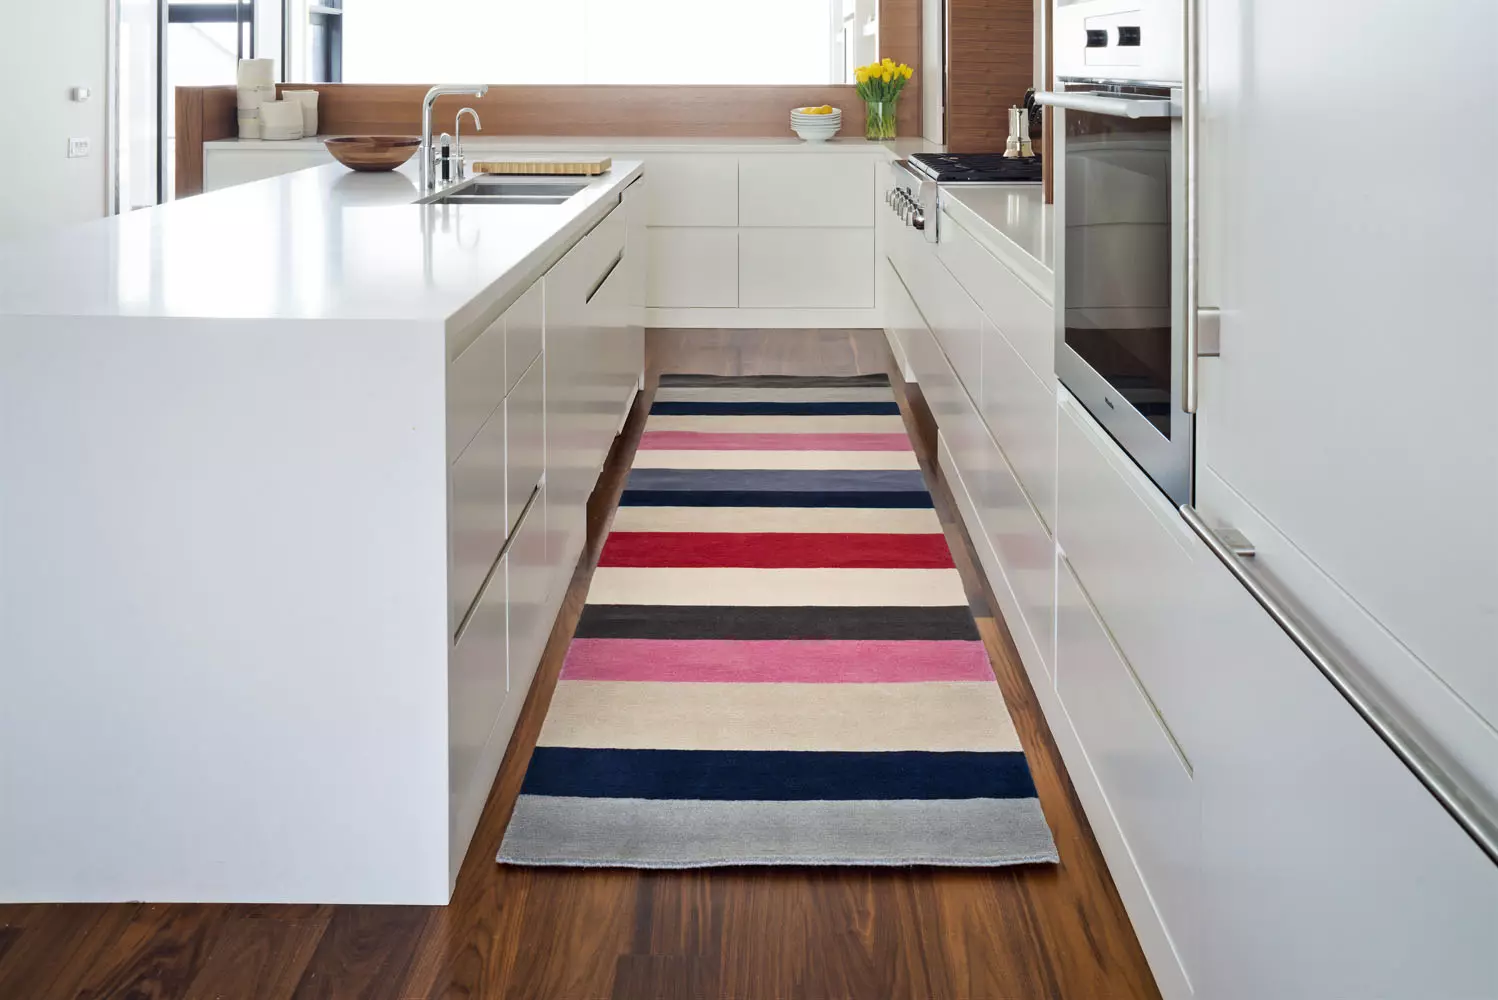 Izbor tepiha u kuhinji